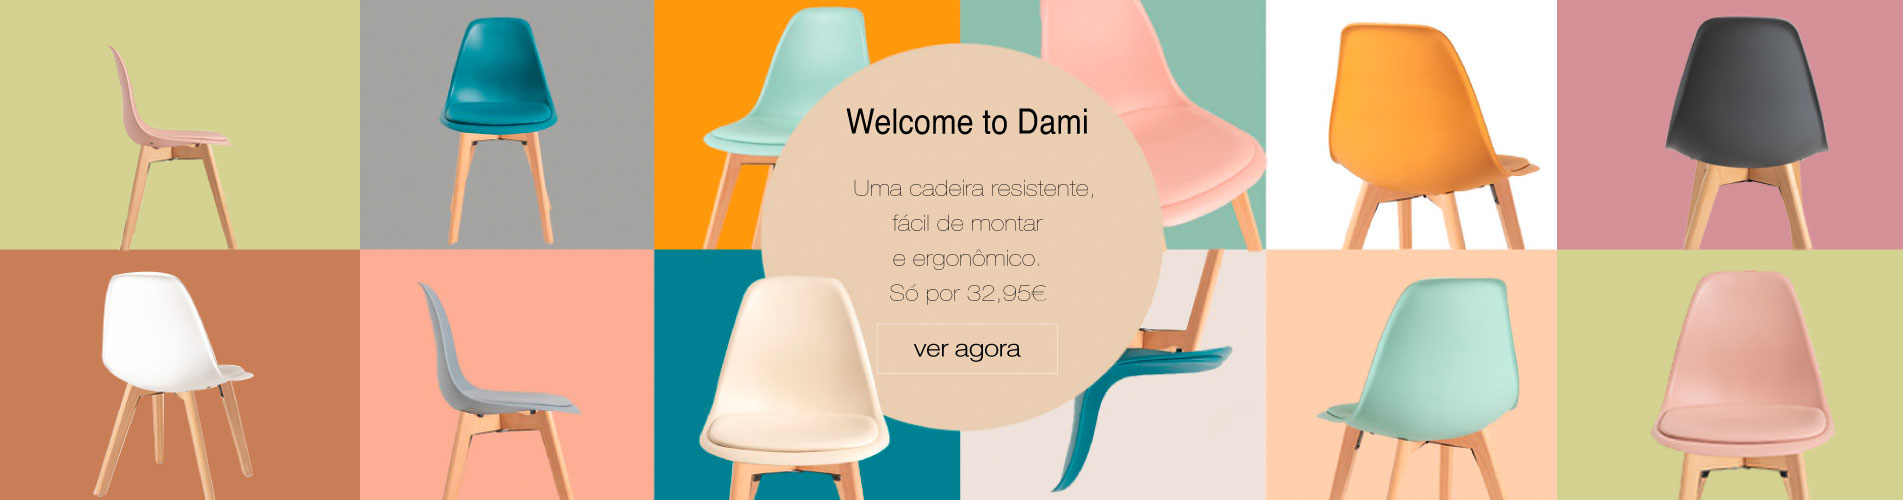 Promoção Welcome Dami - Presentes Miguel